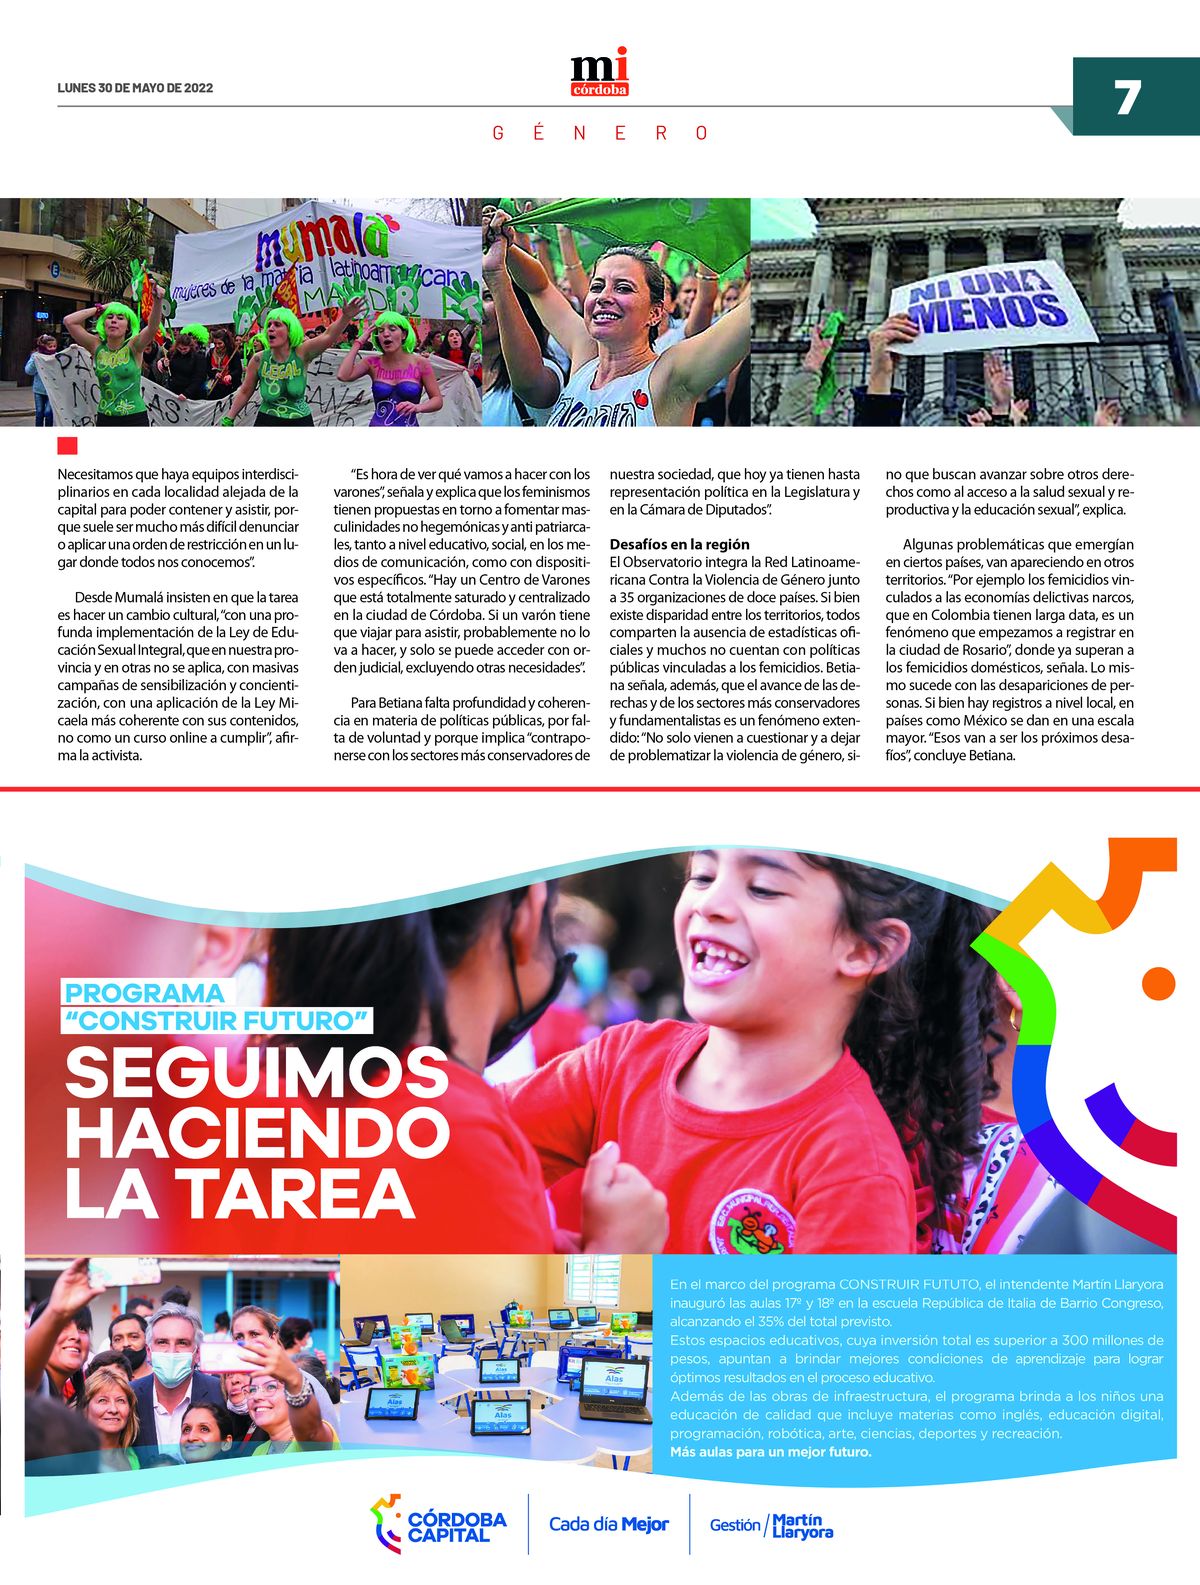 Ya circula la 11ra edición del semanario Marca Informativa Córdoba